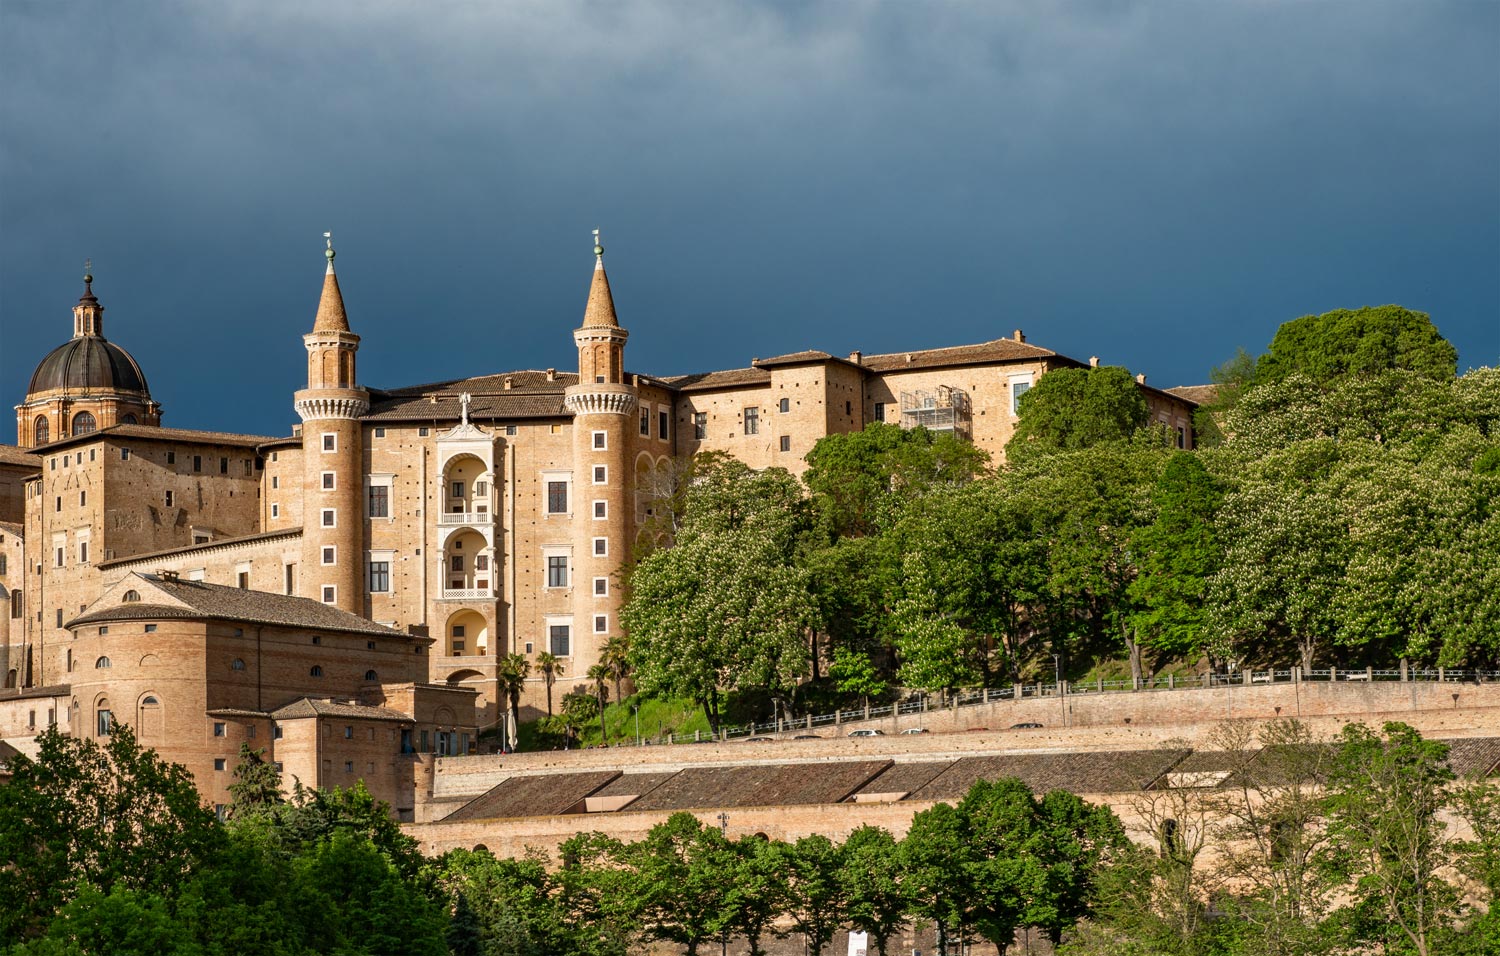 View of Urbino